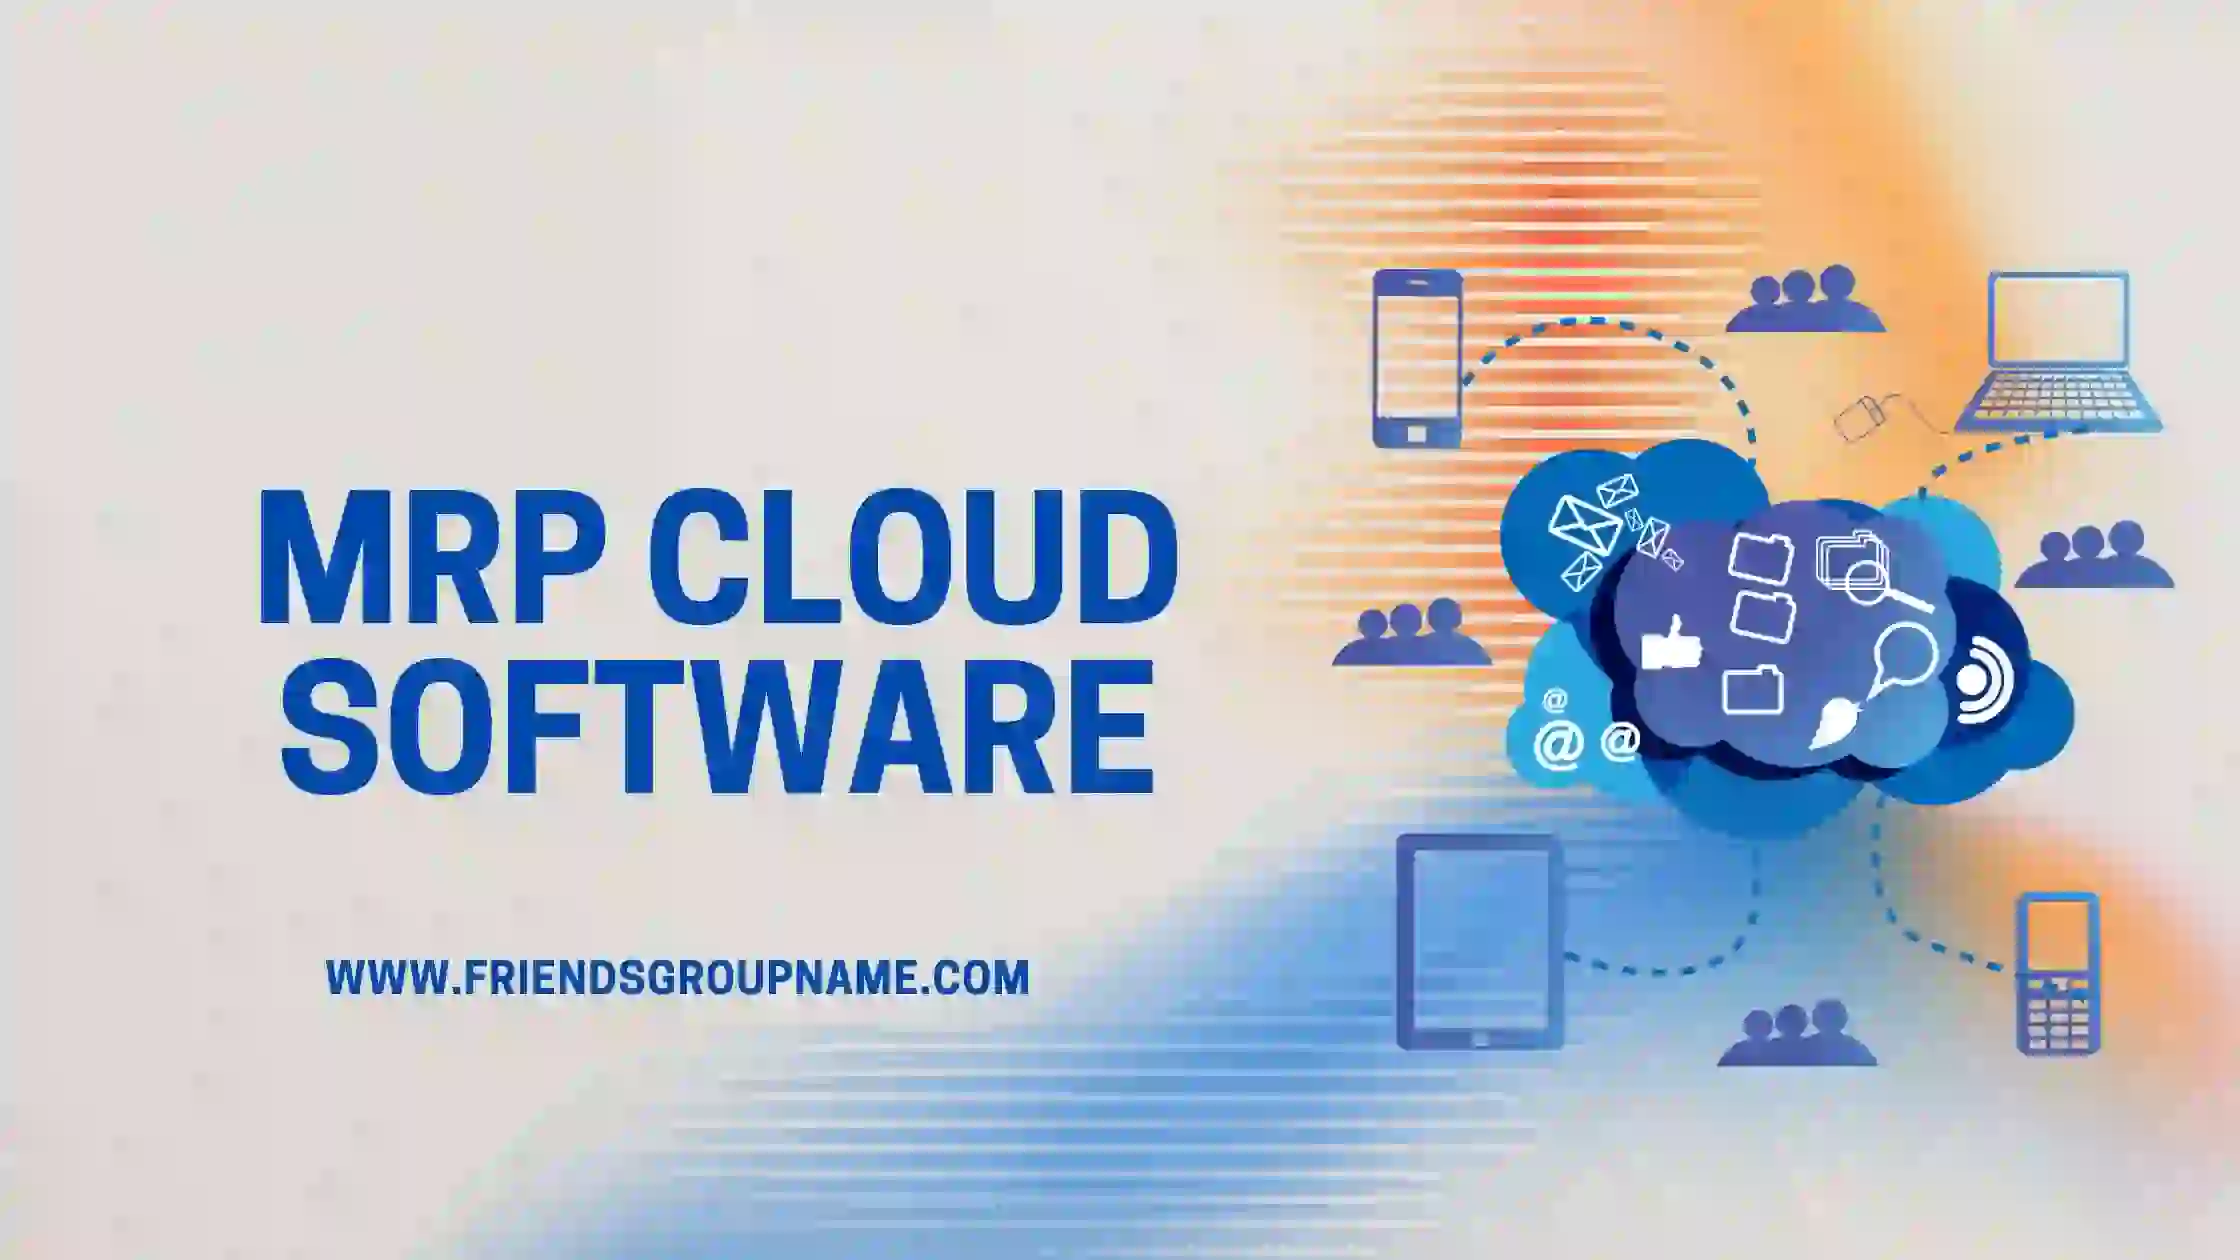 MRP Cloud Software